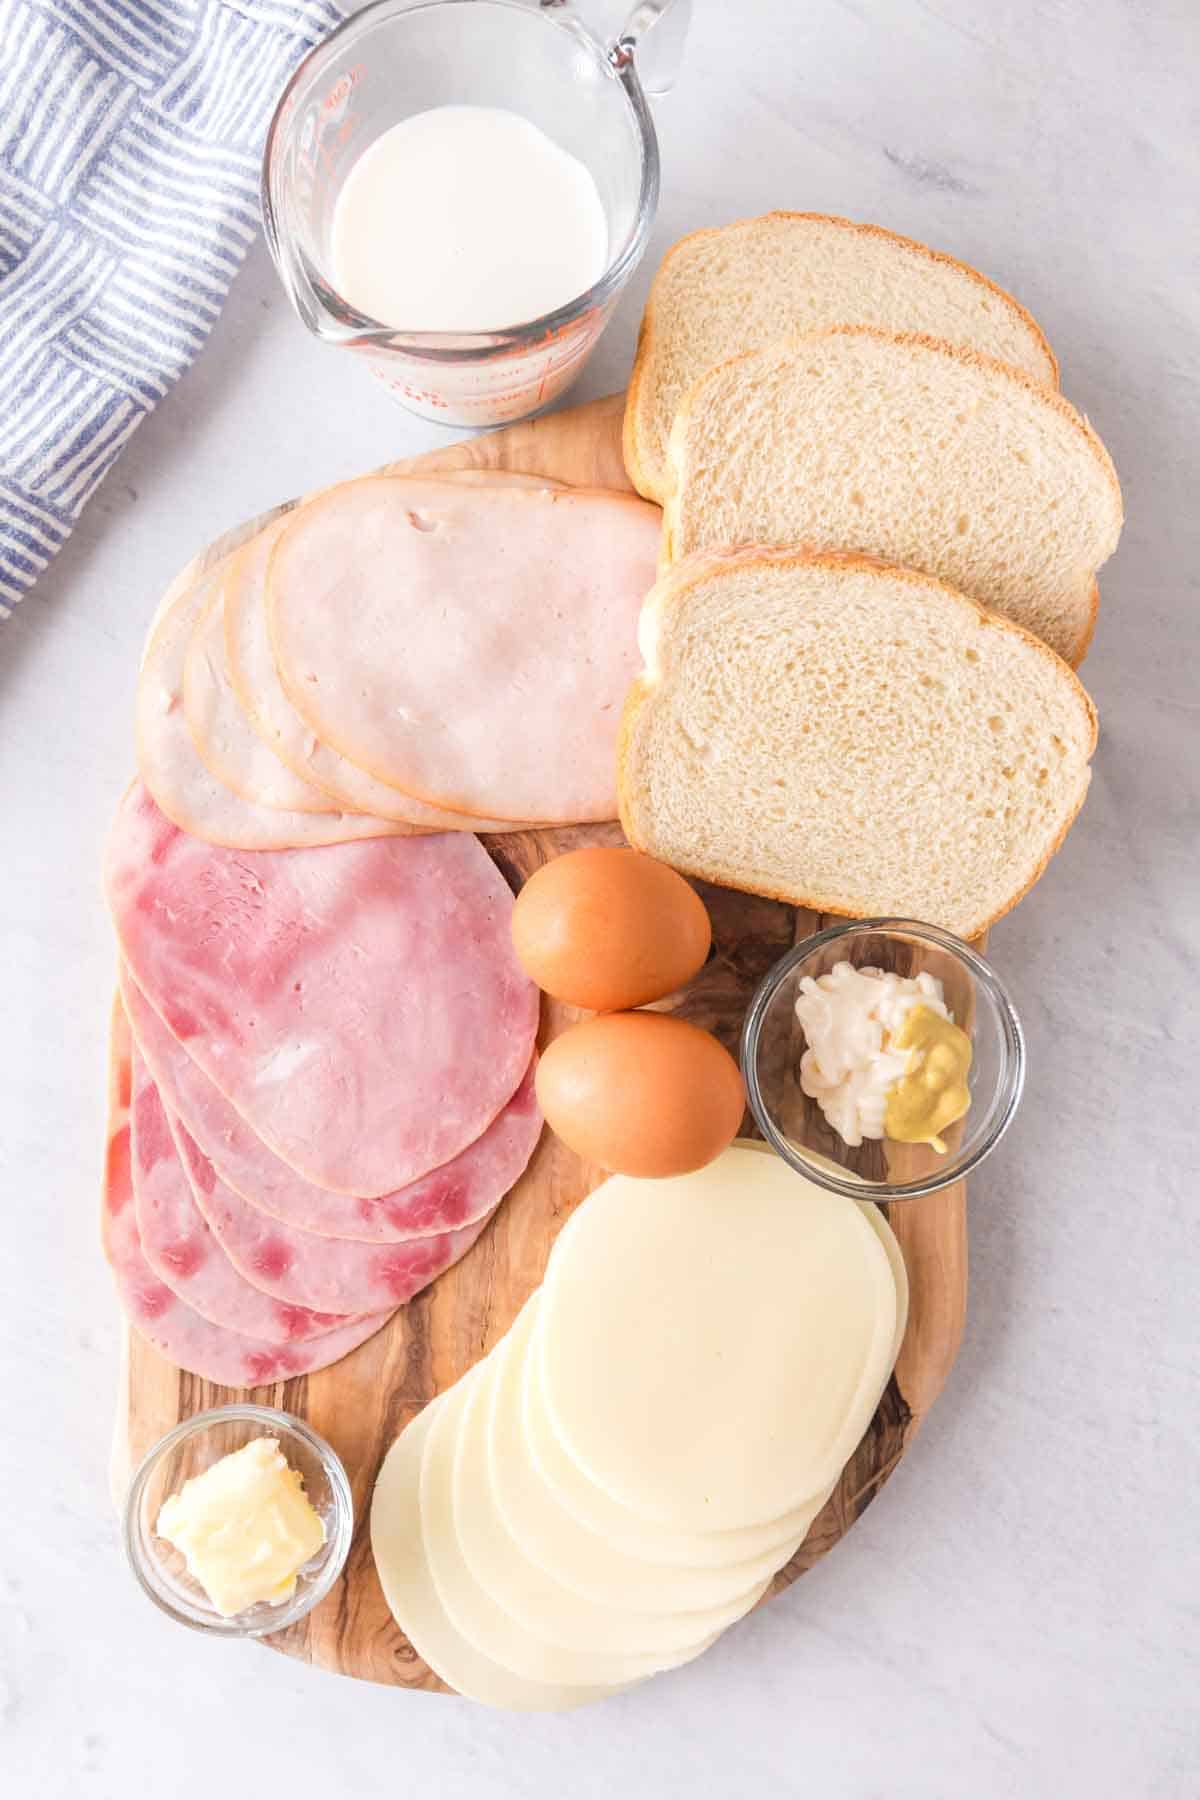 monte cristo sandwich ingredients